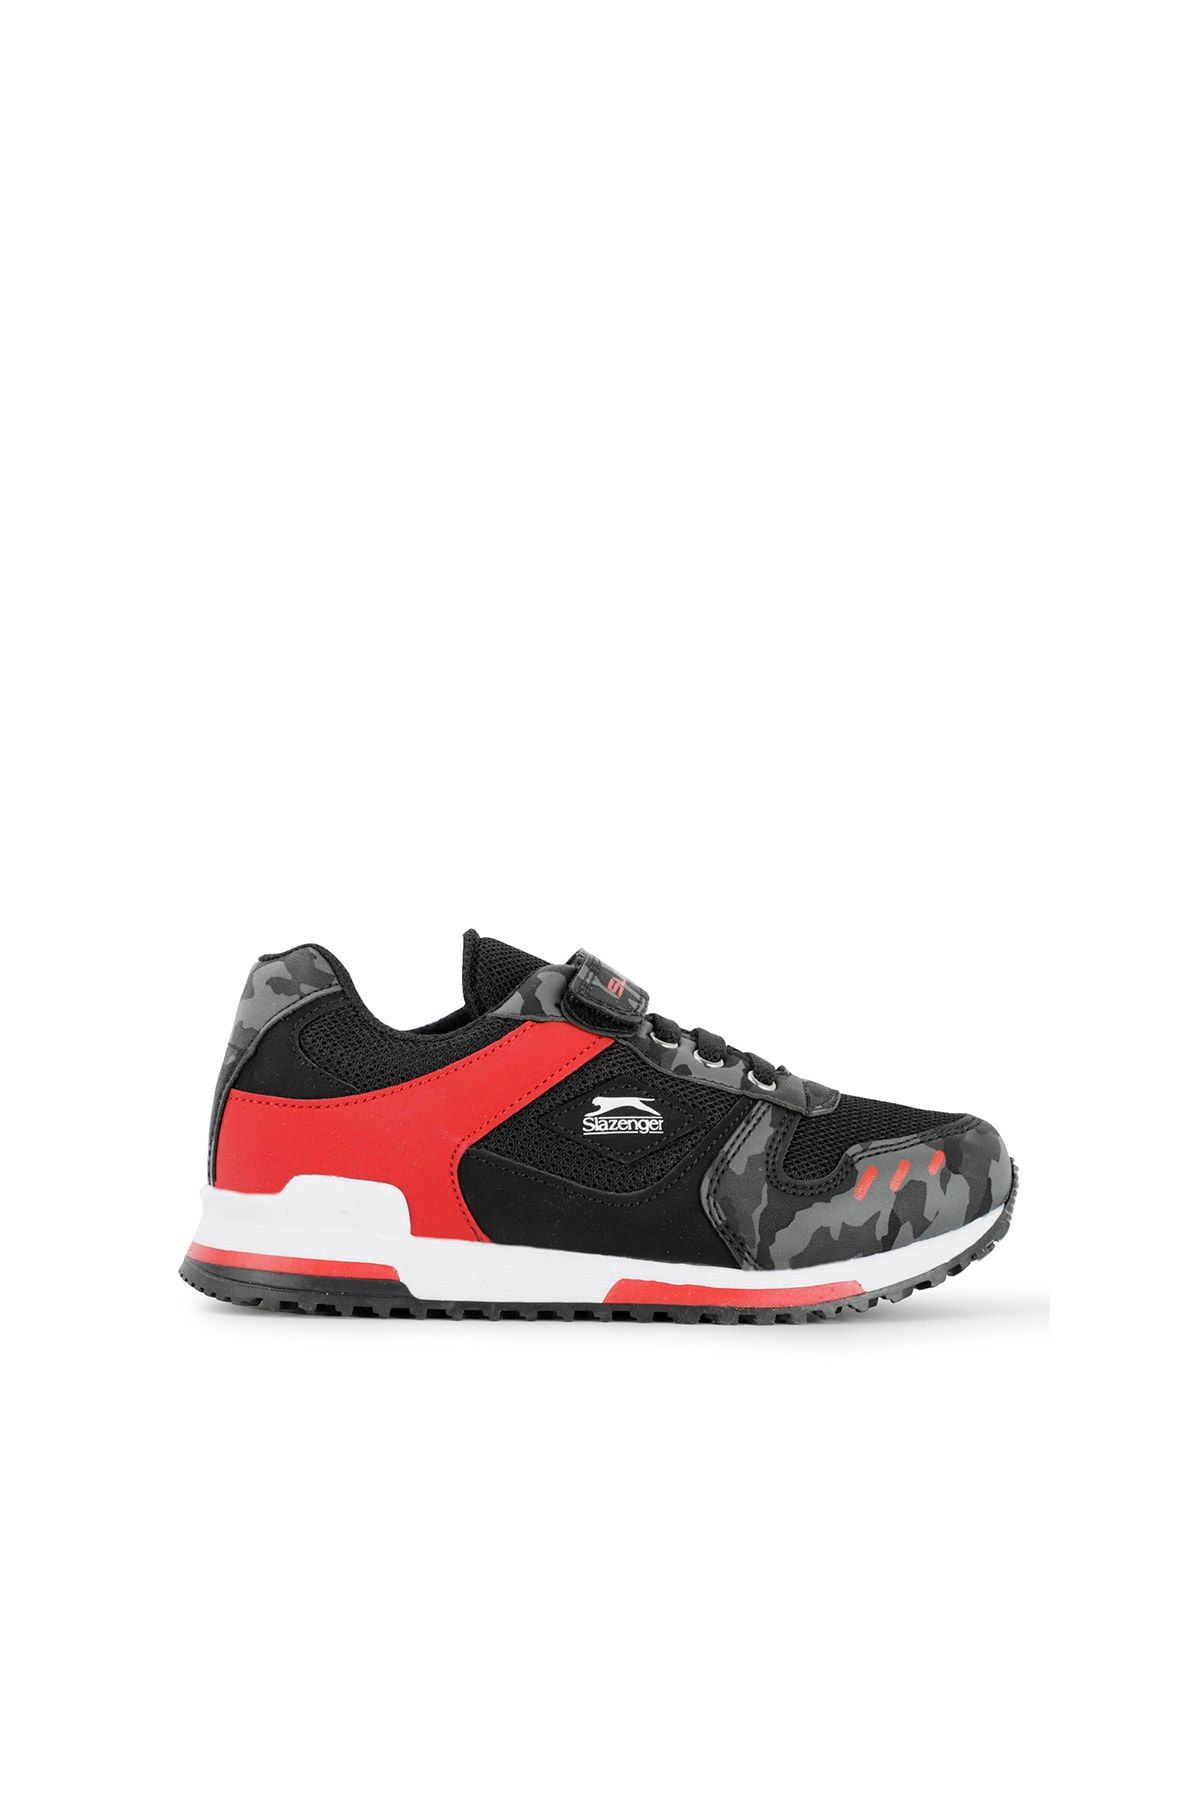 Slazenger Edmond Sneaker Çocuk Ayakkabı Siyah Kamuflaj Sa11lf013